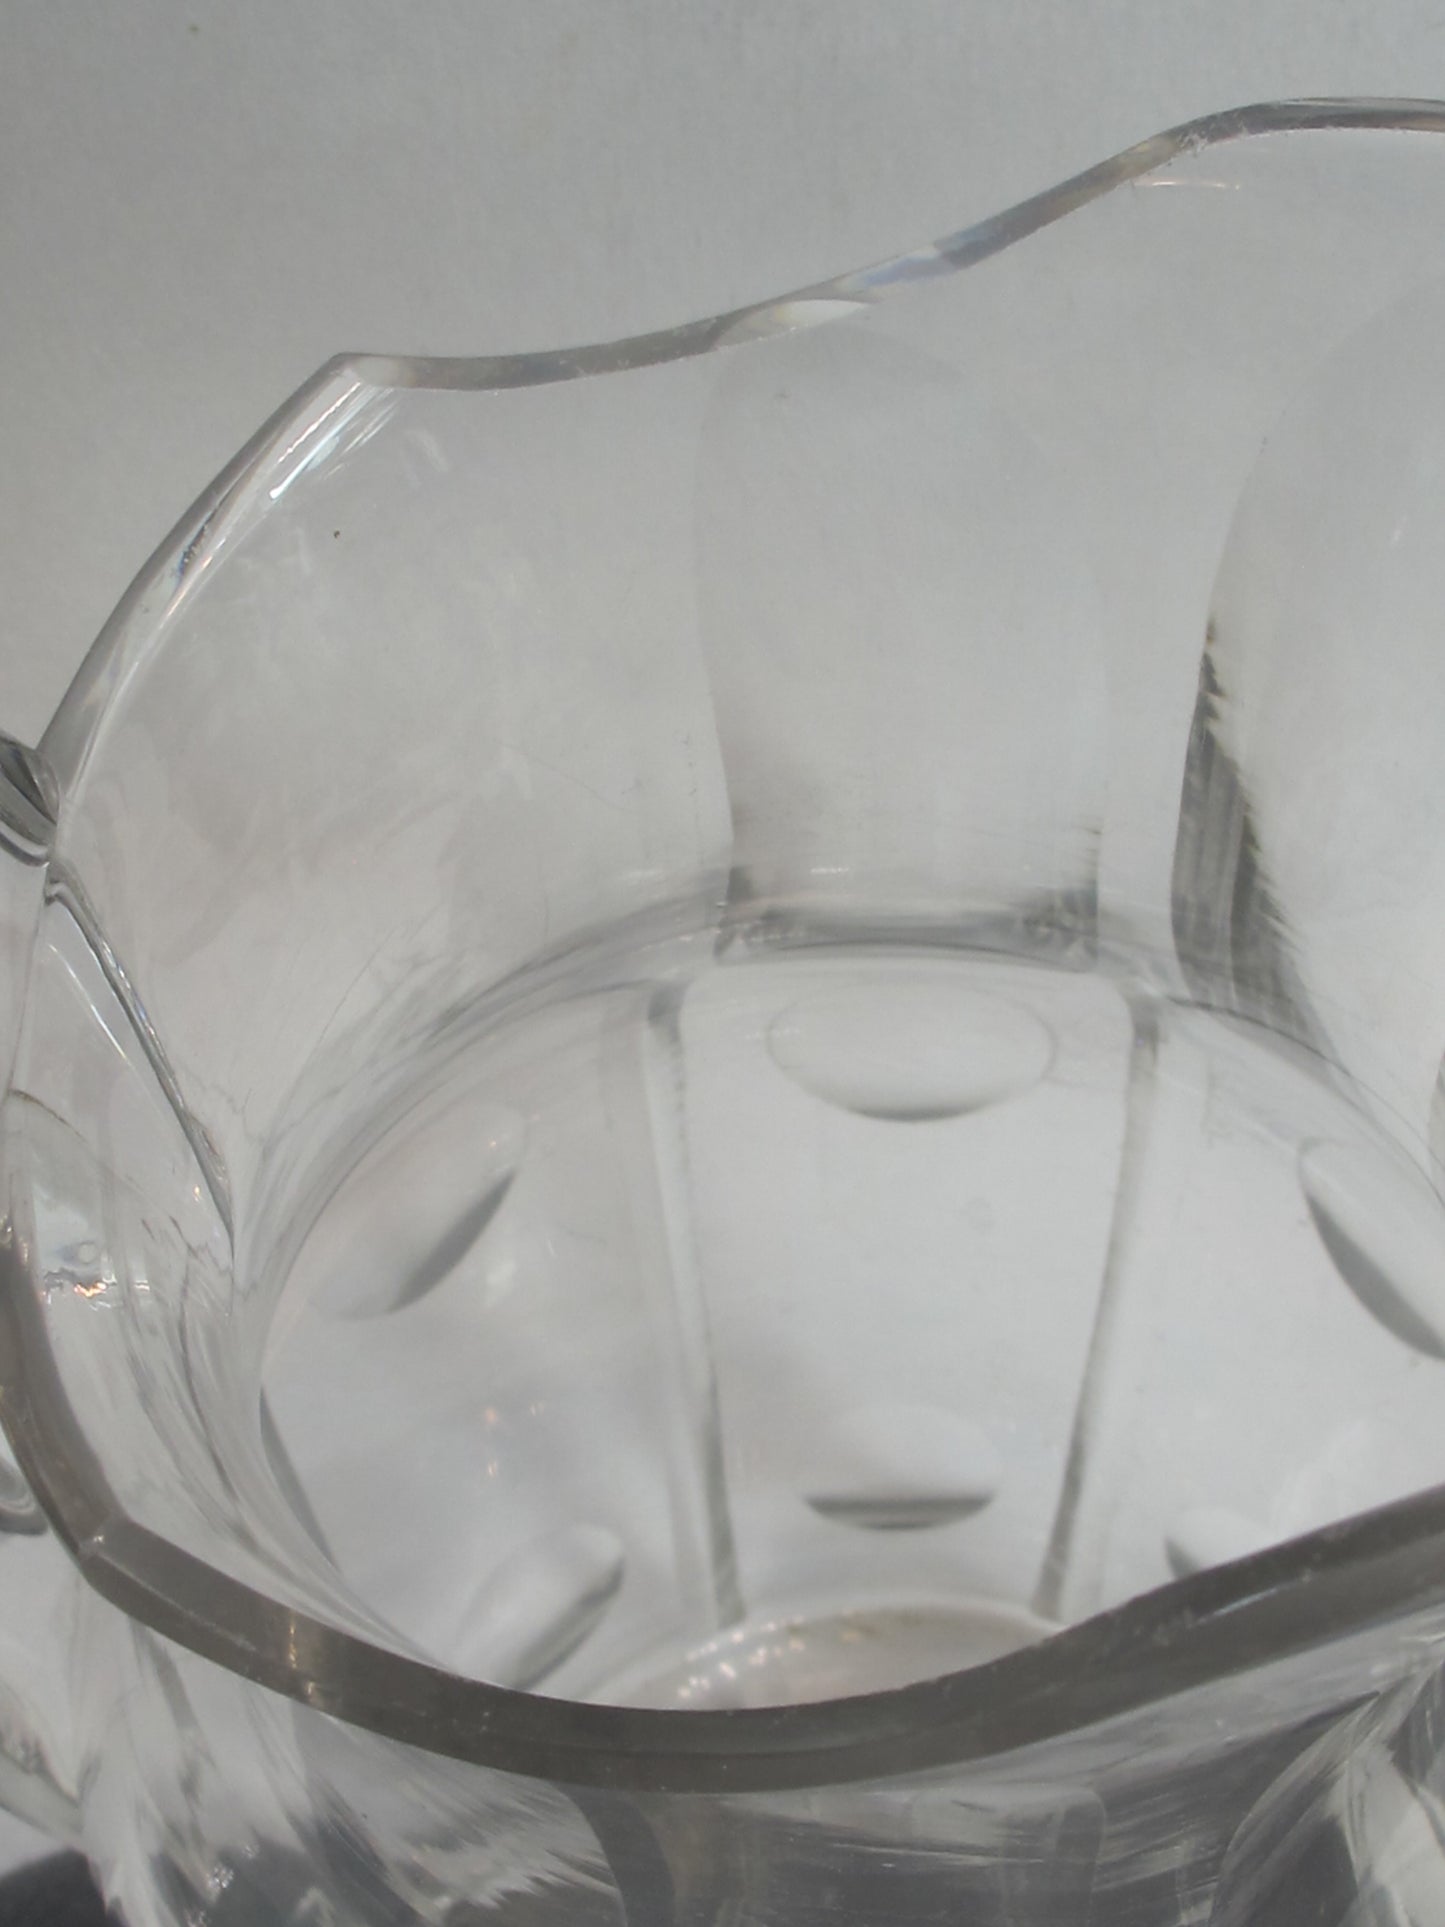 Antique cut glass pitcher ANTIQUE 1800,s